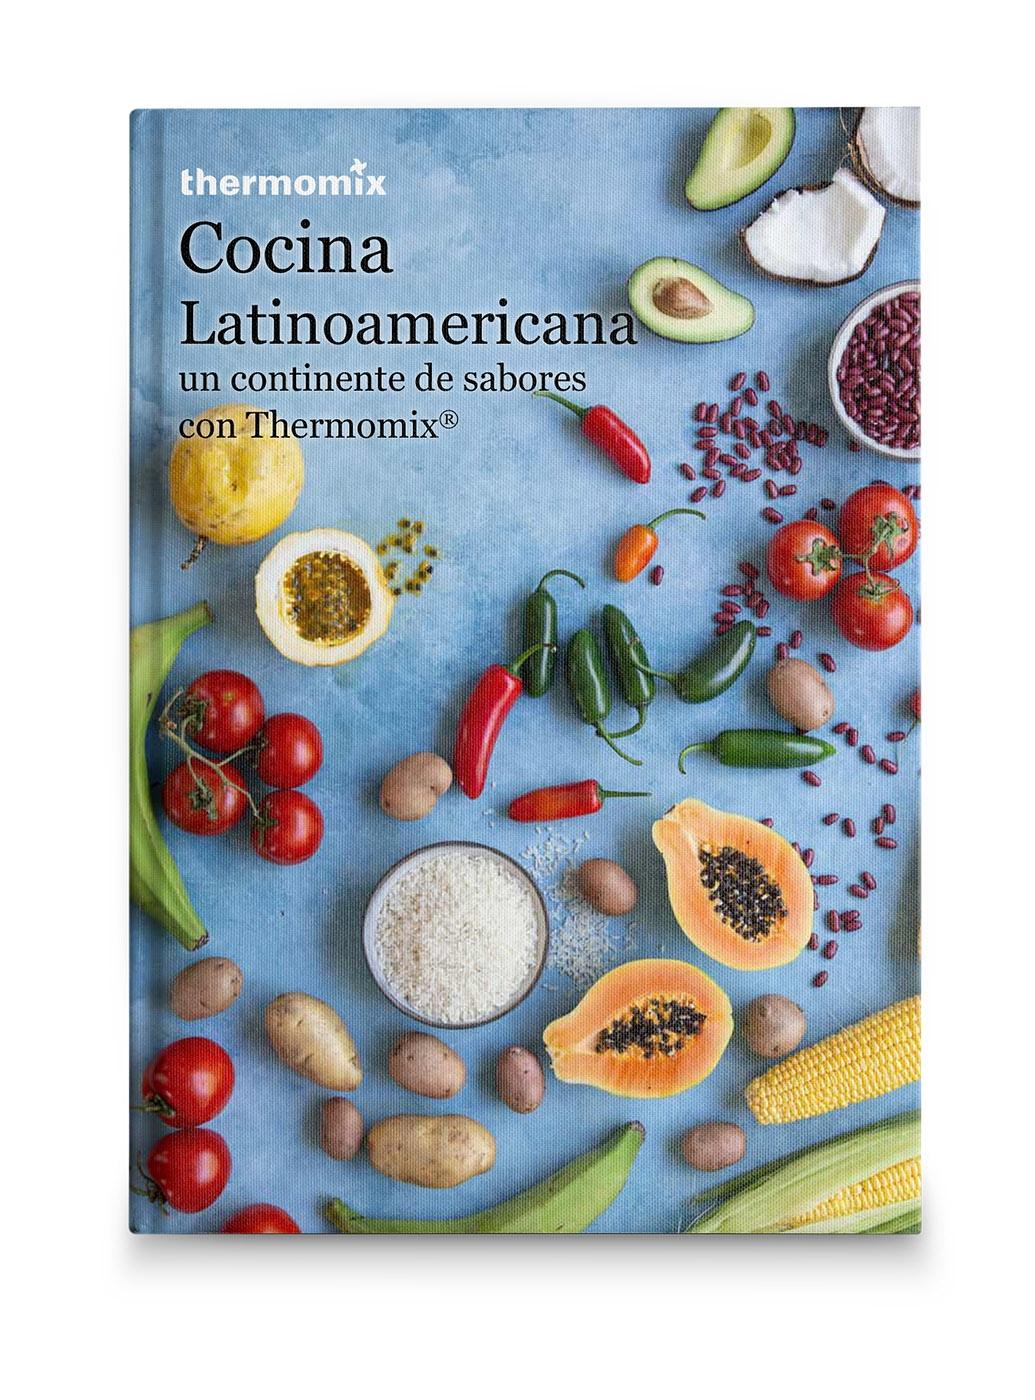 Cocina Latinoamericana "Un Continente de Sabores con Thermomix"